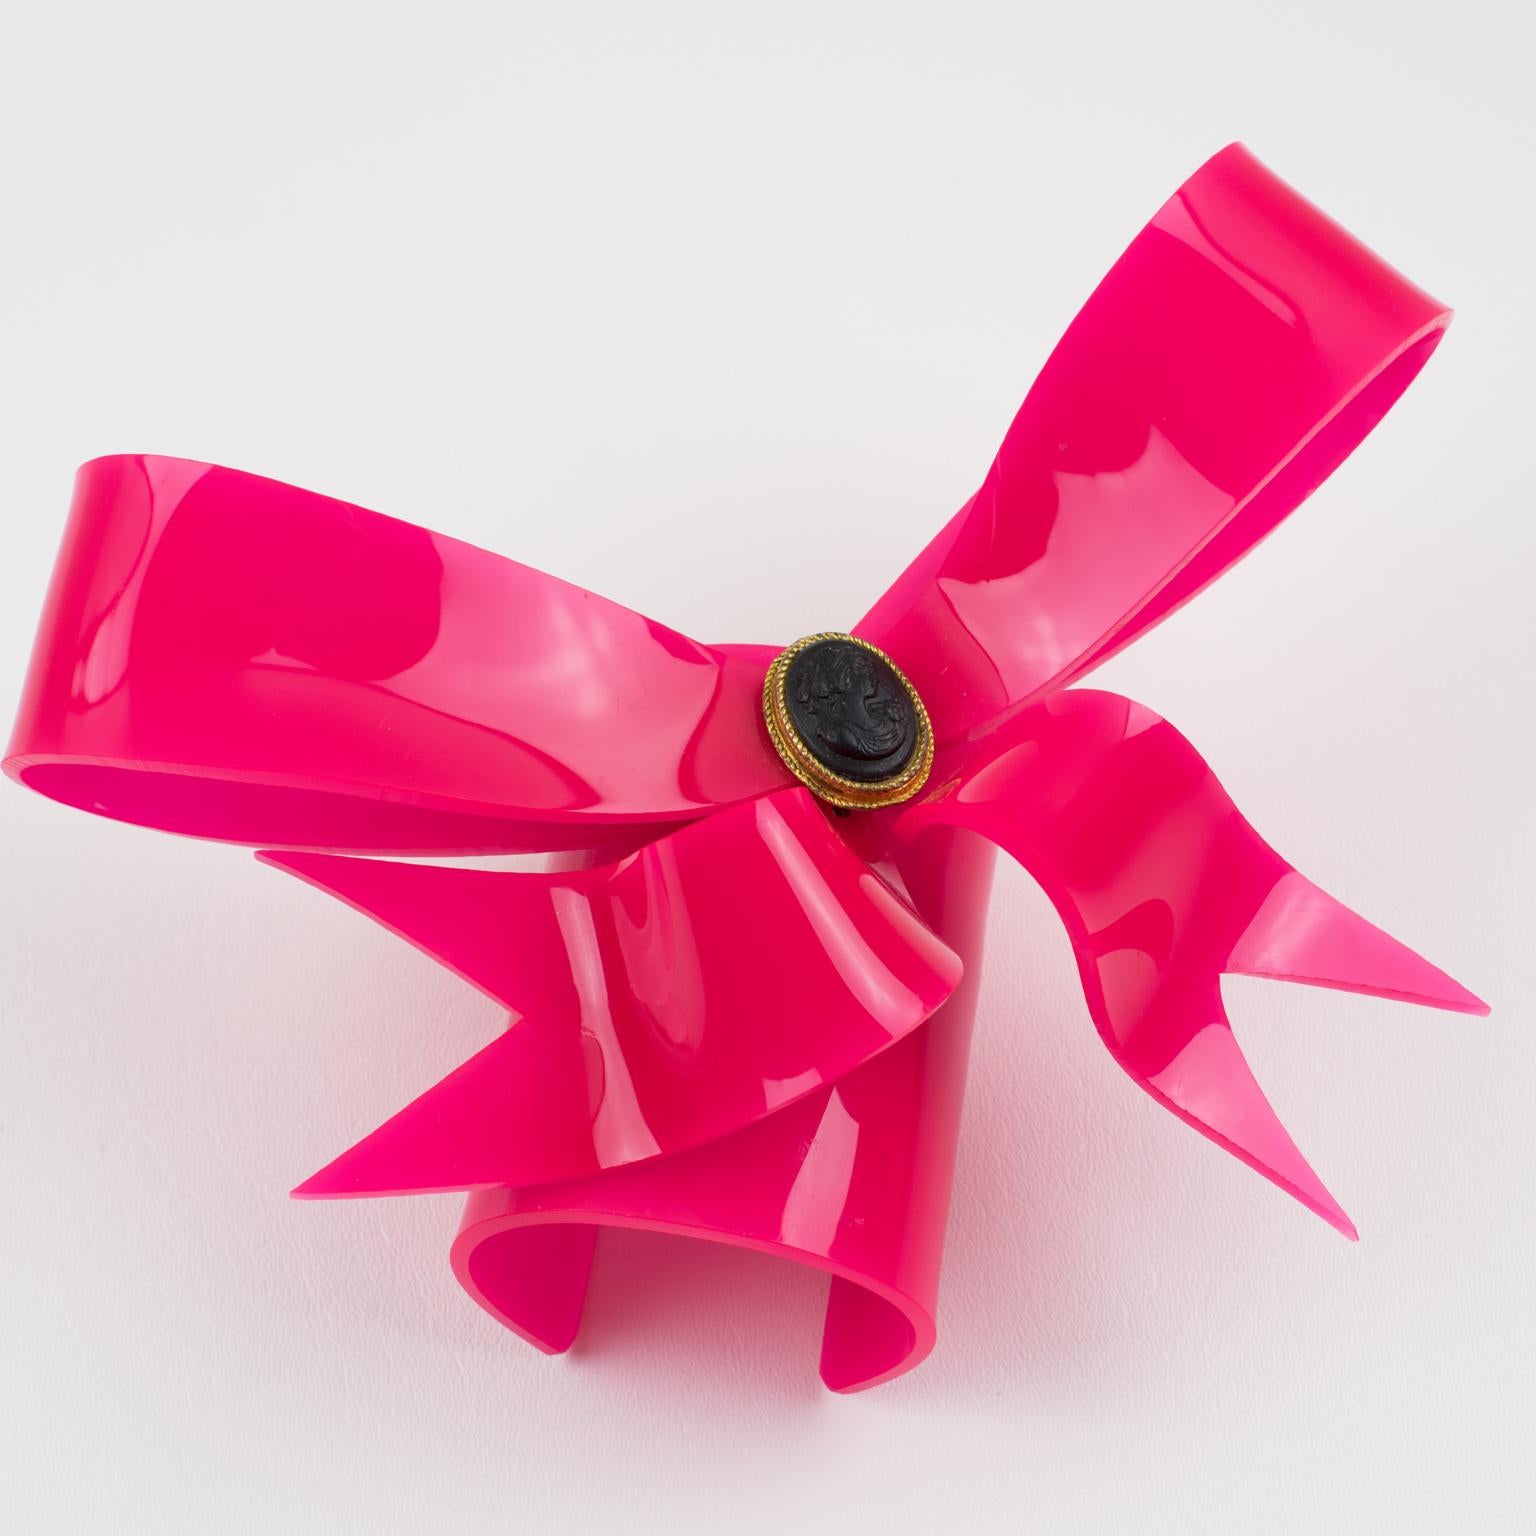 Vivienne Westwood Prototype Cuff Bangle Bracelet Pink Acrylic Bow 3